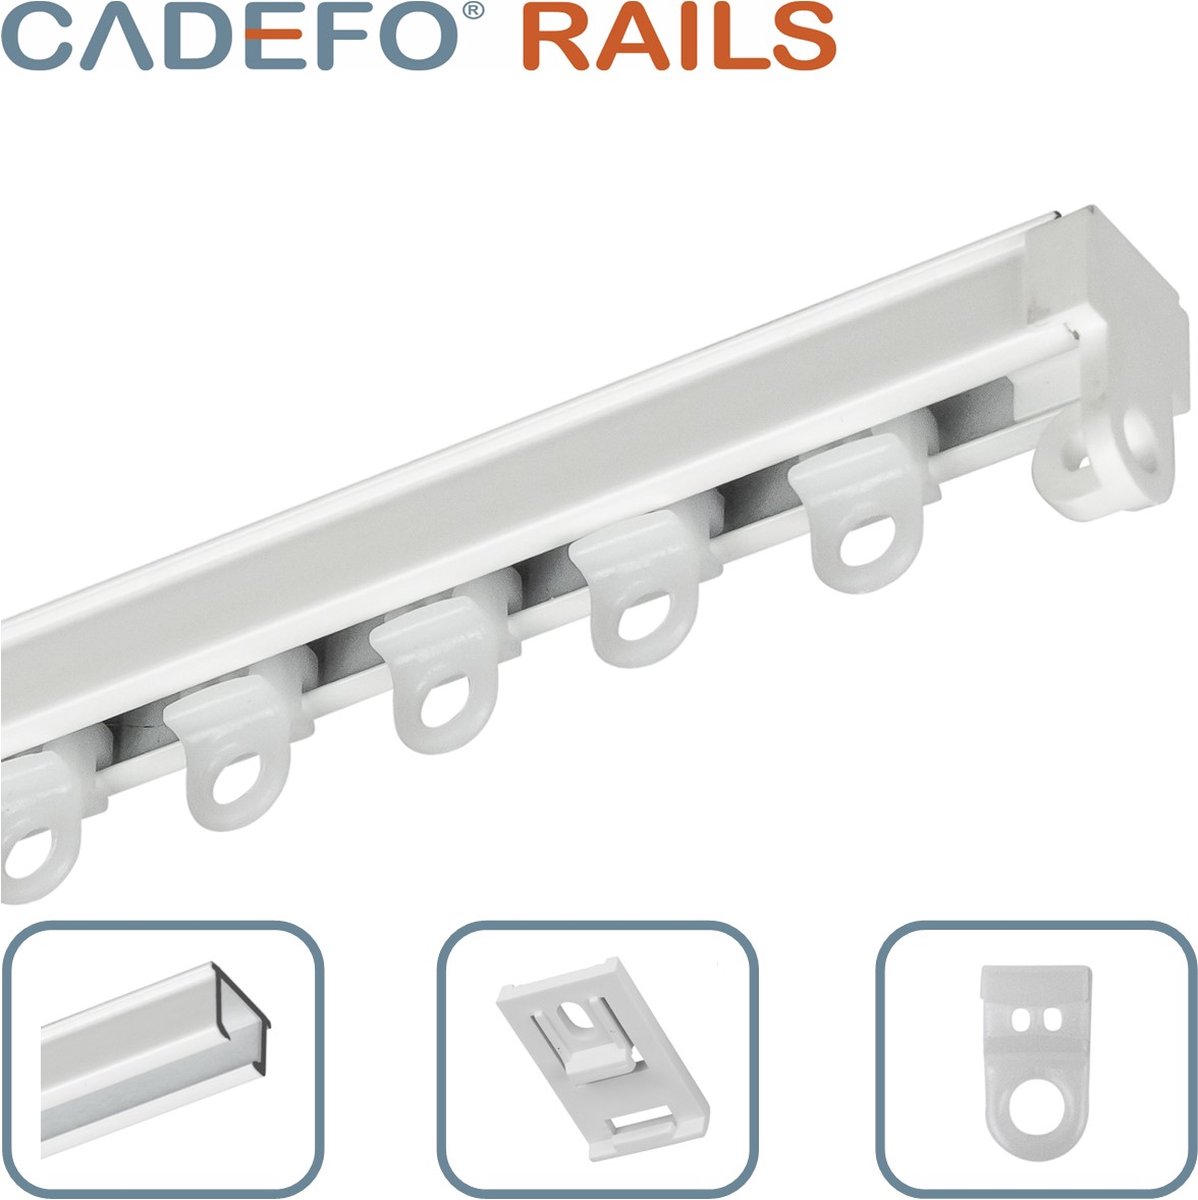 CADEFO RAILS (551 - 600 cm) Gordijnrails - Compleet op maat! - UIT 1 STUK - Leverbaar tot 6 meter - Plafondbevestiging - Lengte 574 cm